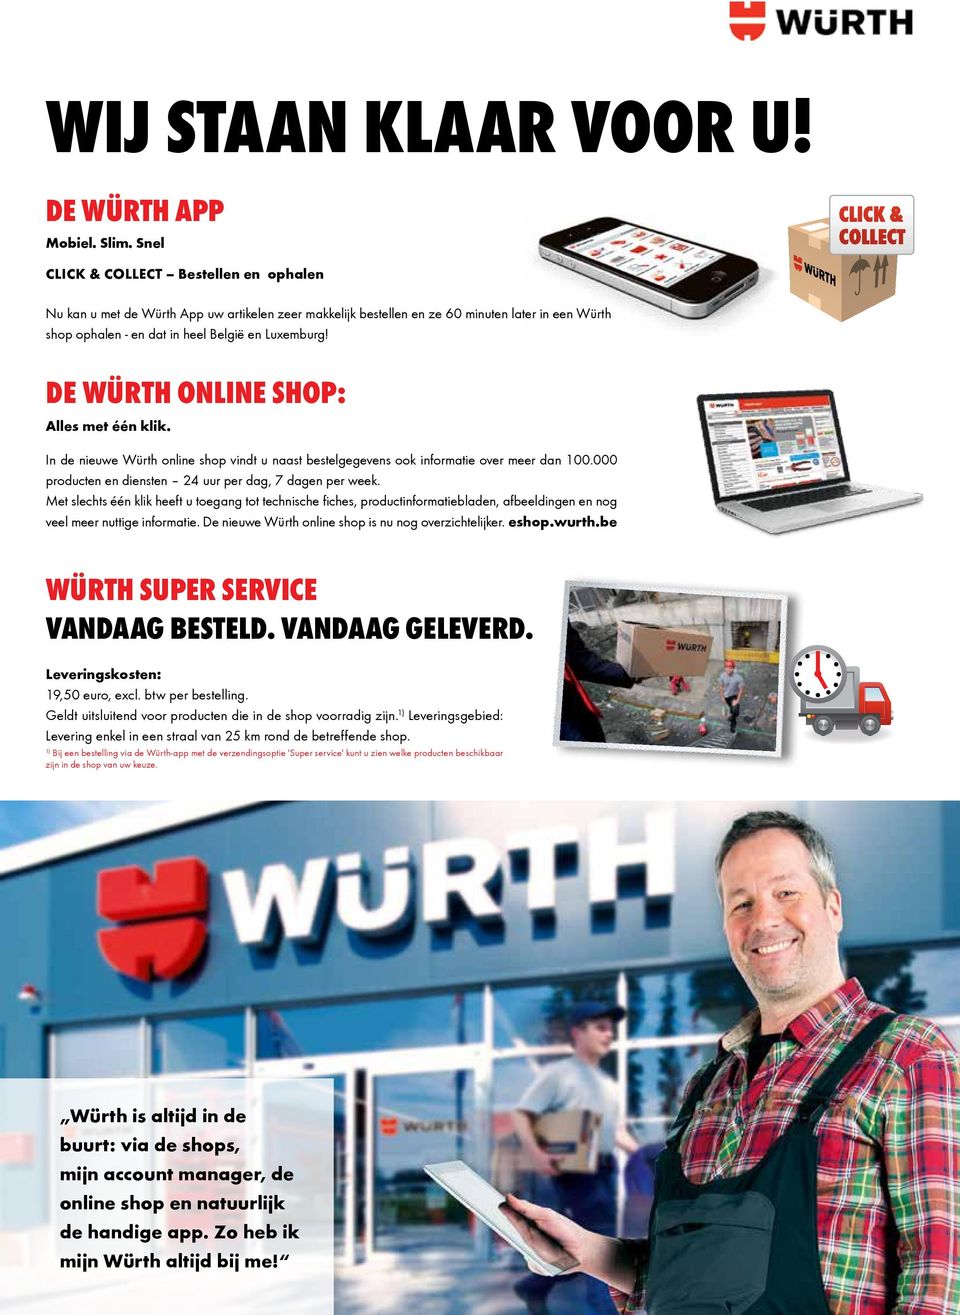 De Würth online shop: Alles met één klik. In de nieuwe Würth online shop vindt u naast bestelgegevens ook informatie over meer dan 100.000 producten en diensten 24 uur per dag, 7 dagen per week.